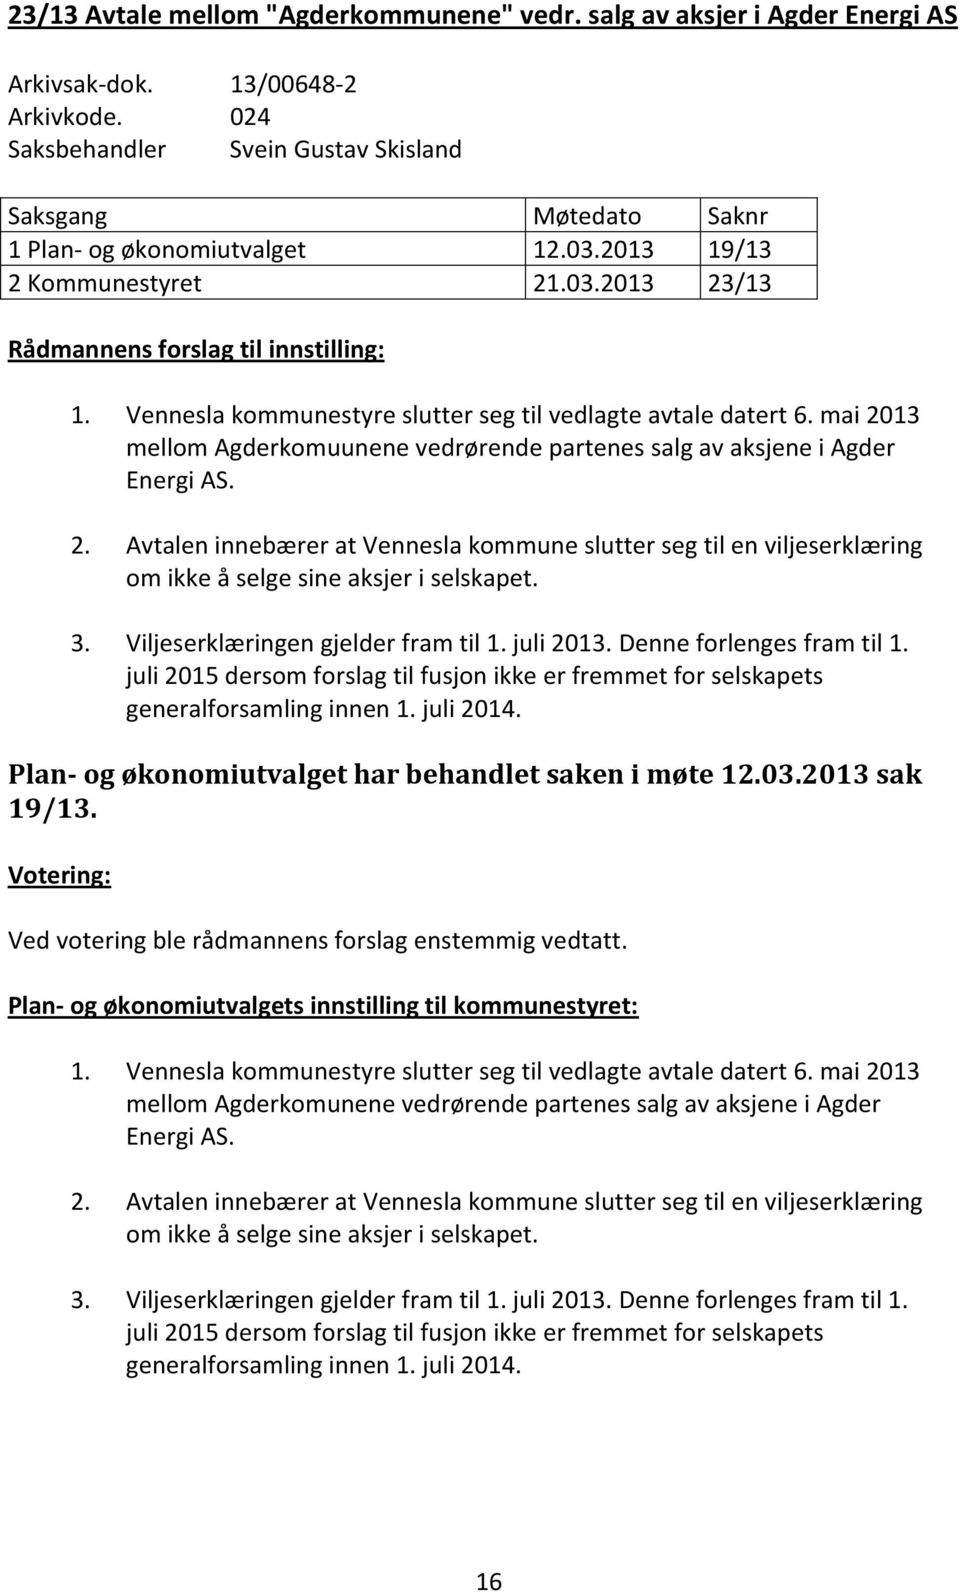 mai 2013 mellom Agderkomuunene vedrørende partenes salg av aksjene i Agder Energi AS. 2. Avtalen innebærer at Vennesla kommune slutter seg til en viljeserklæring om ikke å selge sine aksjer i selskapet.